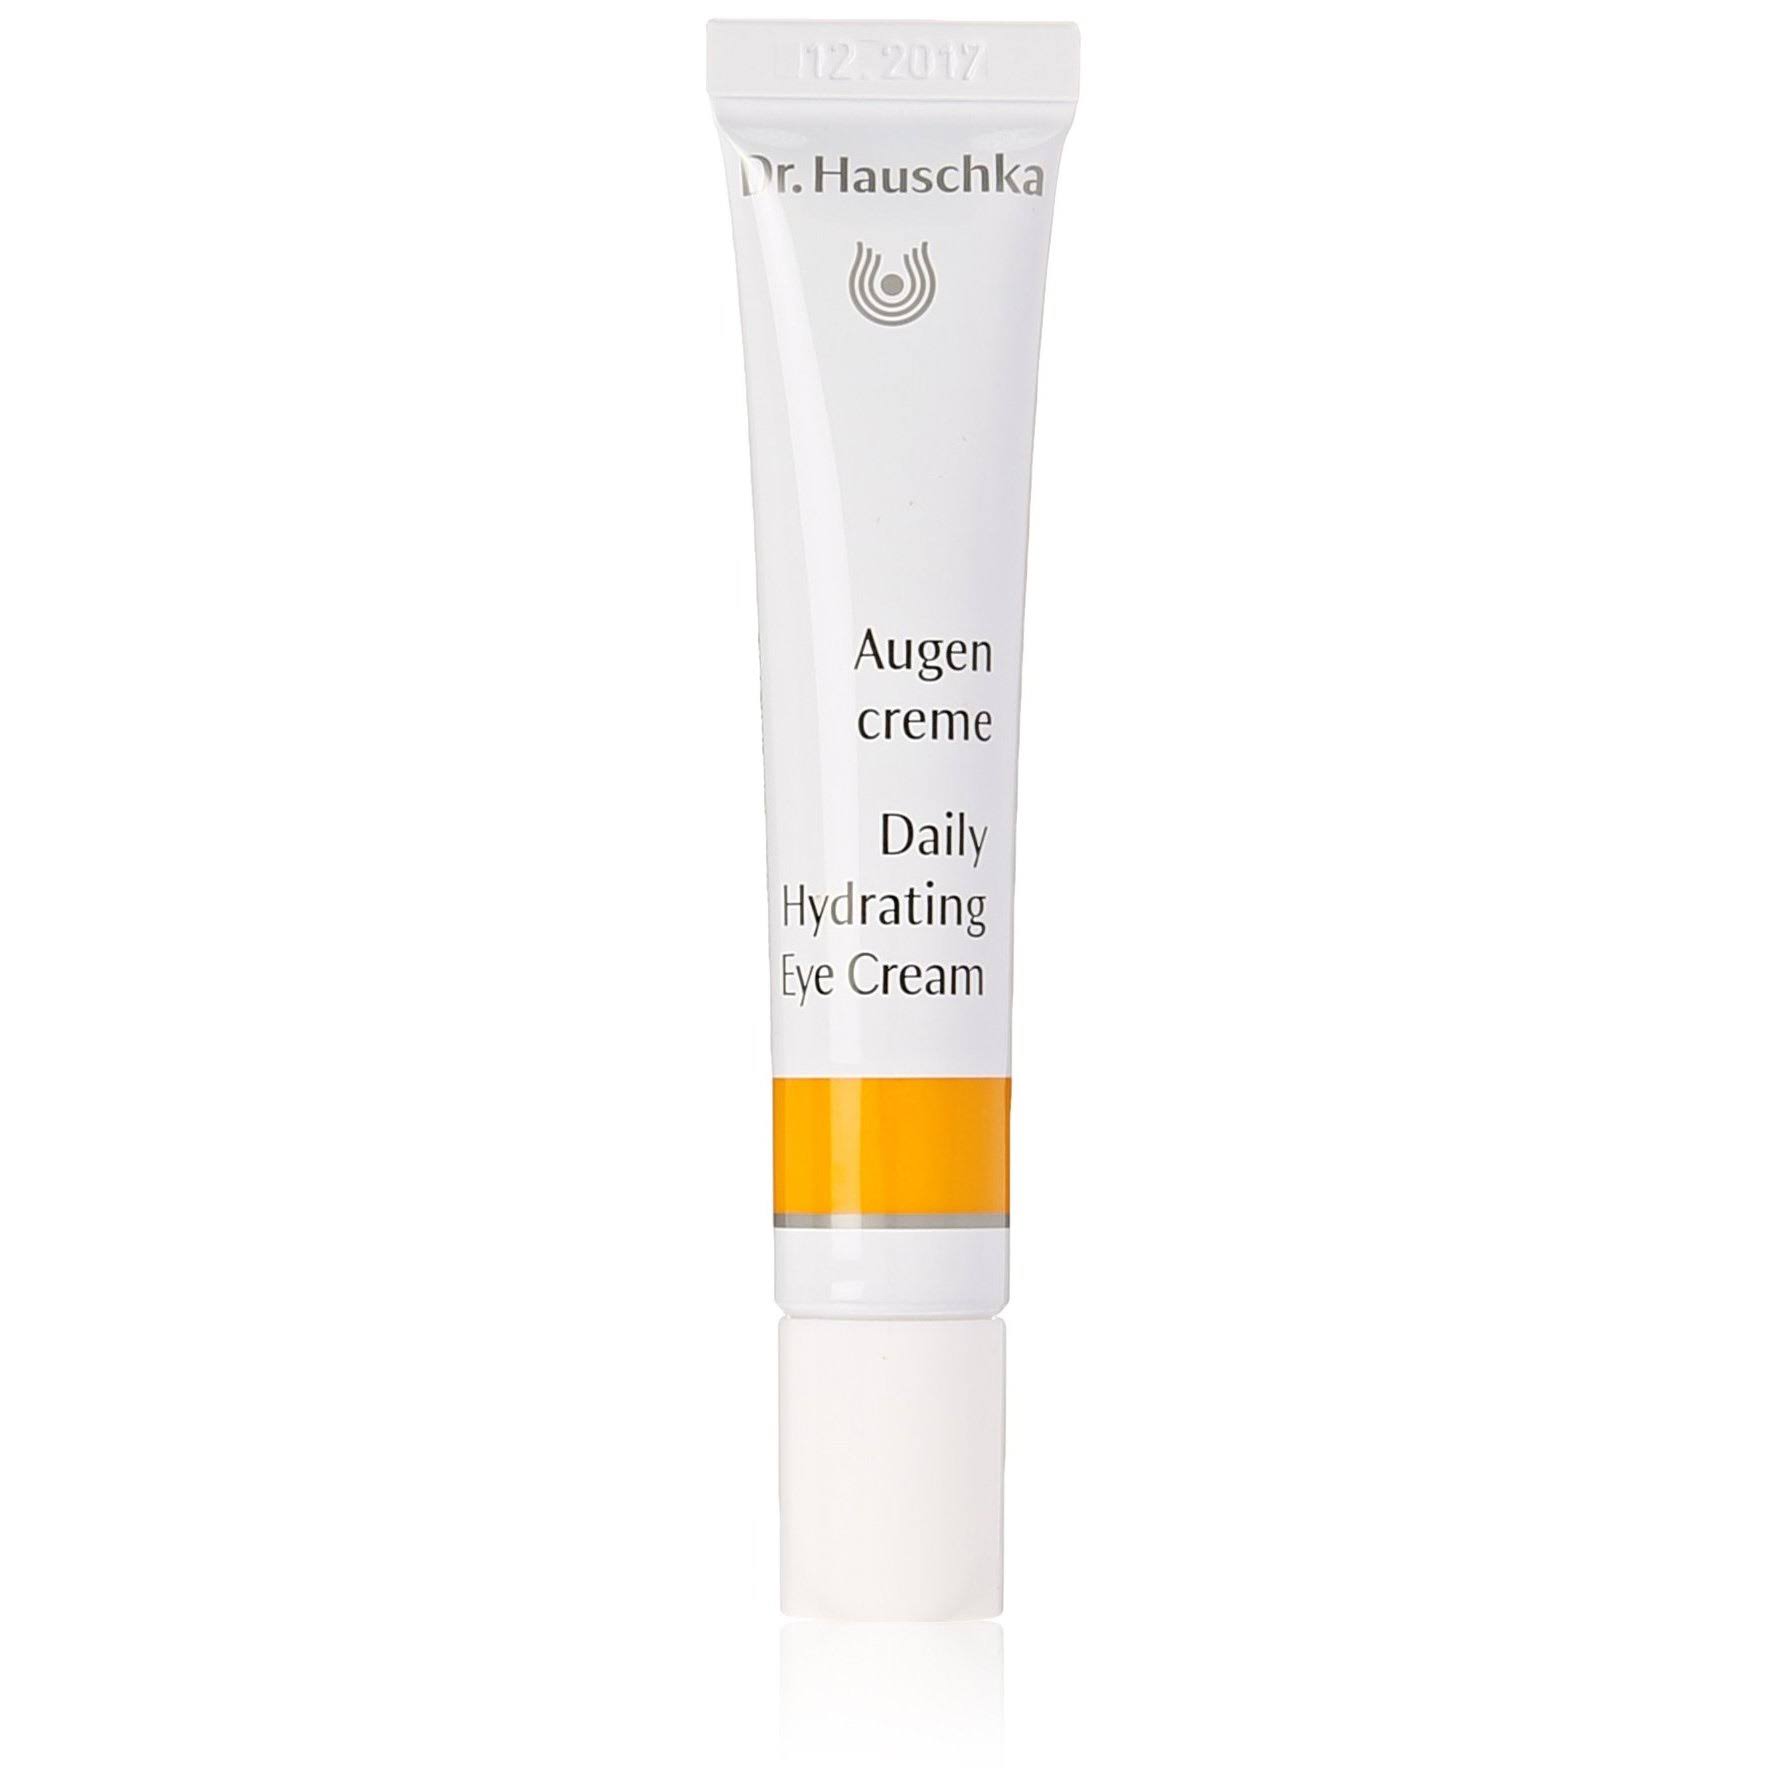 Dr. Hauschka Daily Hydrating Eye Cream - 12.5ml